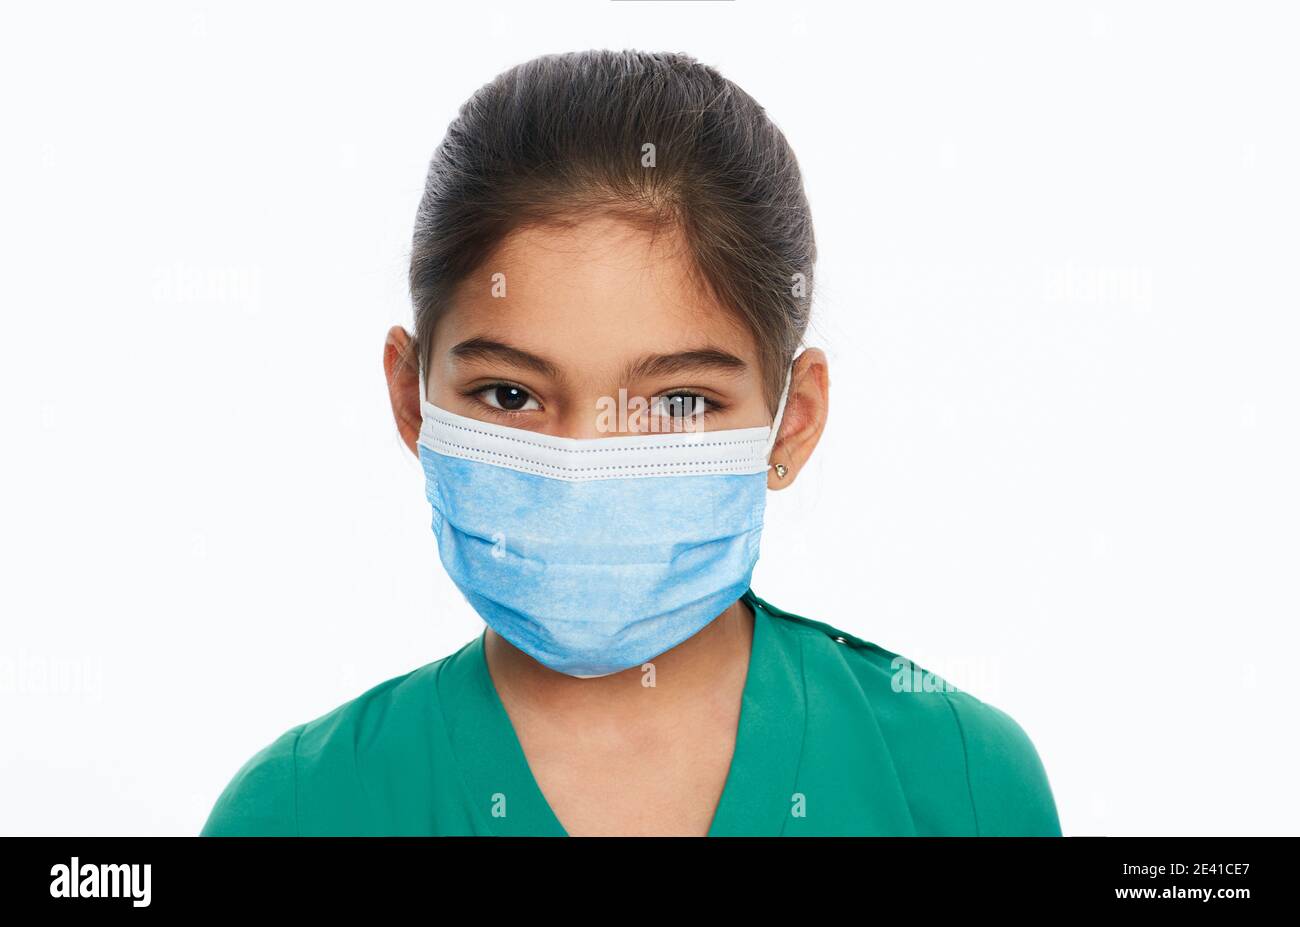 Bambina asiatica con maschera chirurgica protettiva durante una pandemia globale, isolata su bianco. Scuola a casa e autoisolamento, covid-19 Foto Stock